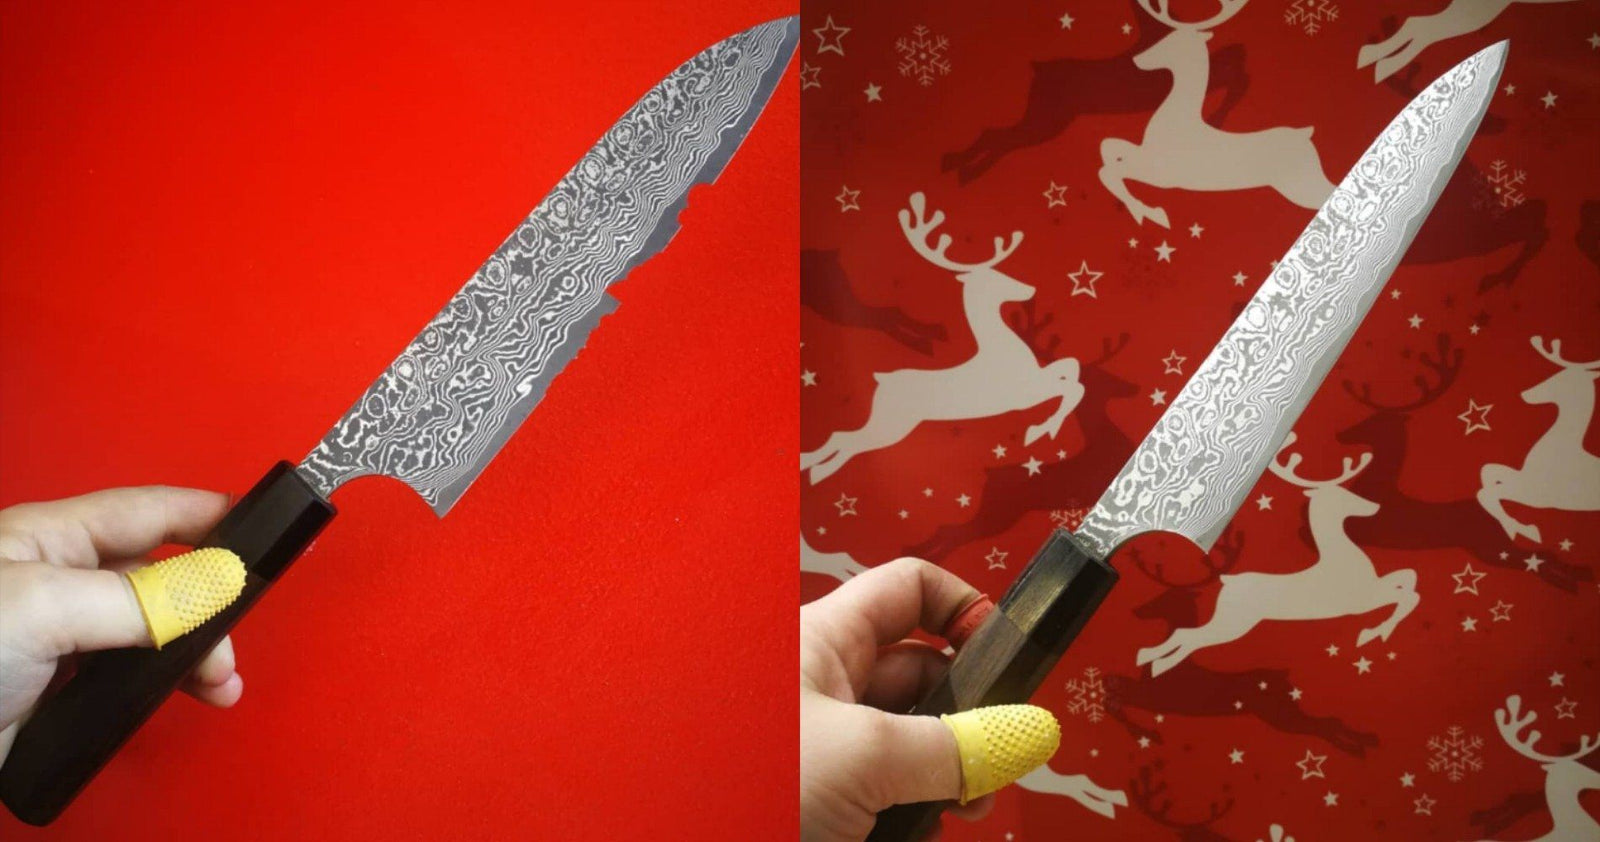 Knife Materials, knife making, knife steel, ceramic knife, chef knife,  butcher knife